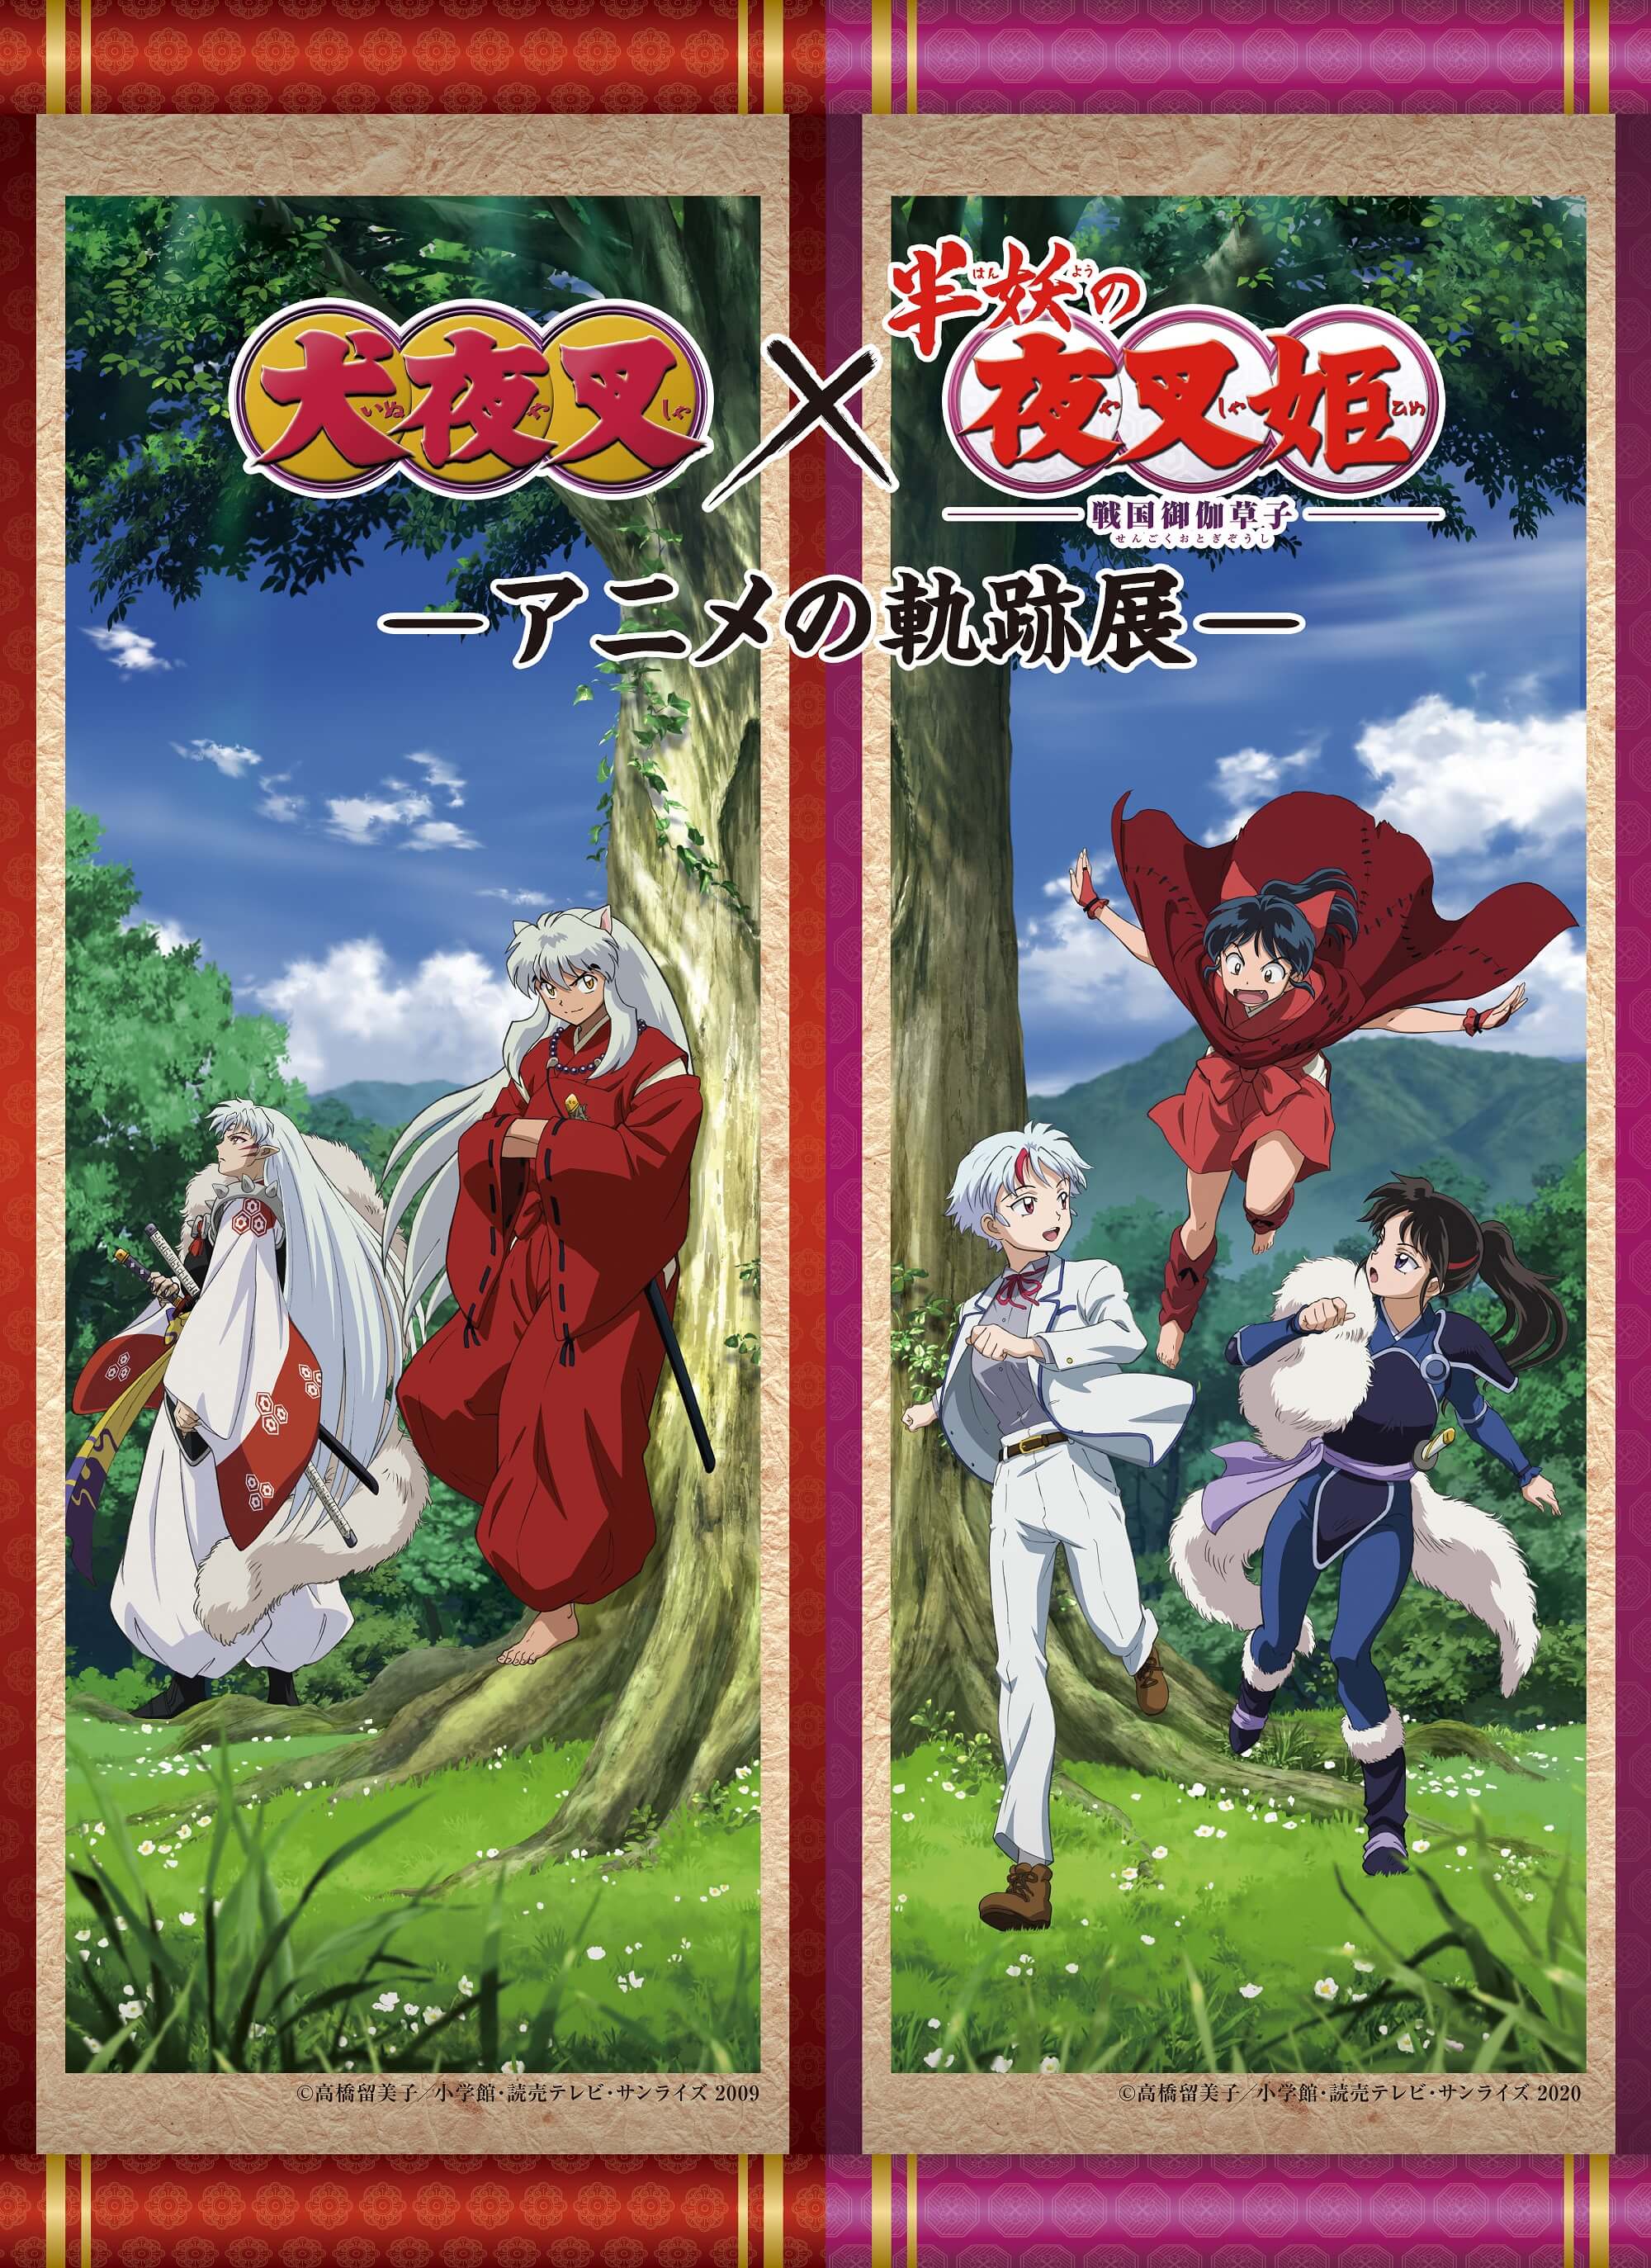 Anime: 'Inuyasha' Series Revived as 'Yashahime: Princess Half-Demon'